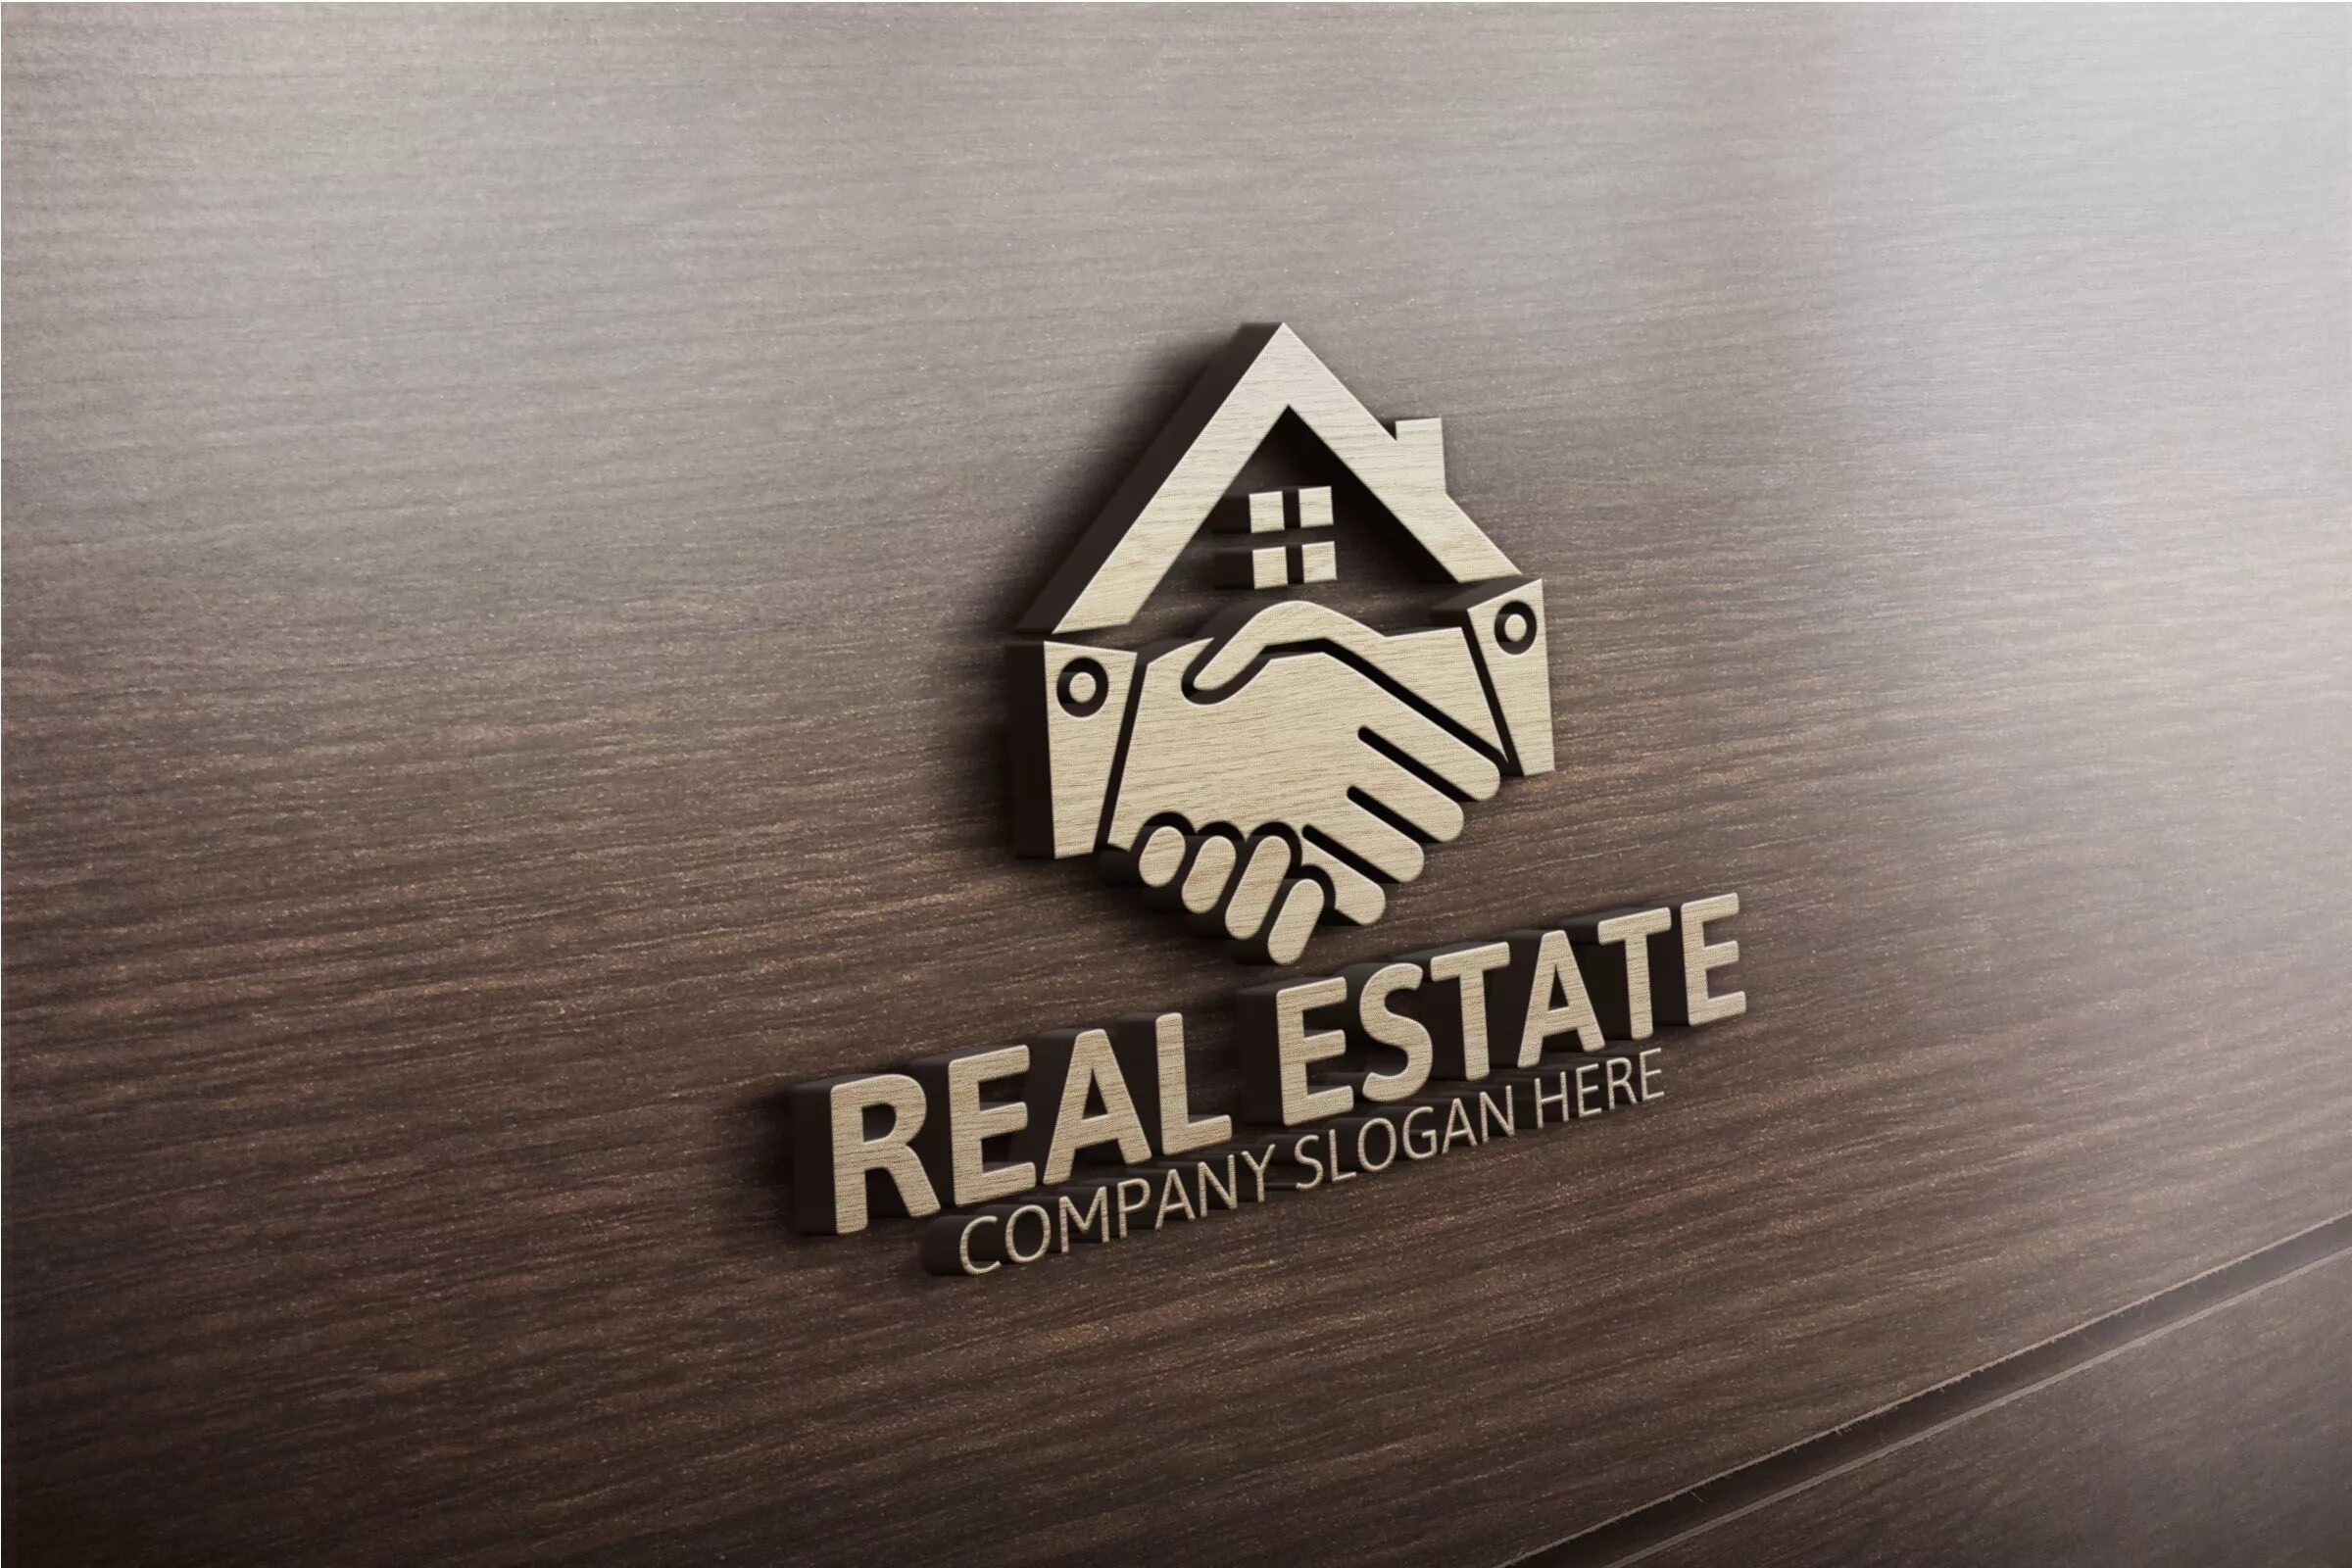 Real estate company. Логотип недвижимость. Логотип риэлторской компании. Логотип строительной компании. Агентство недвижимости лого.